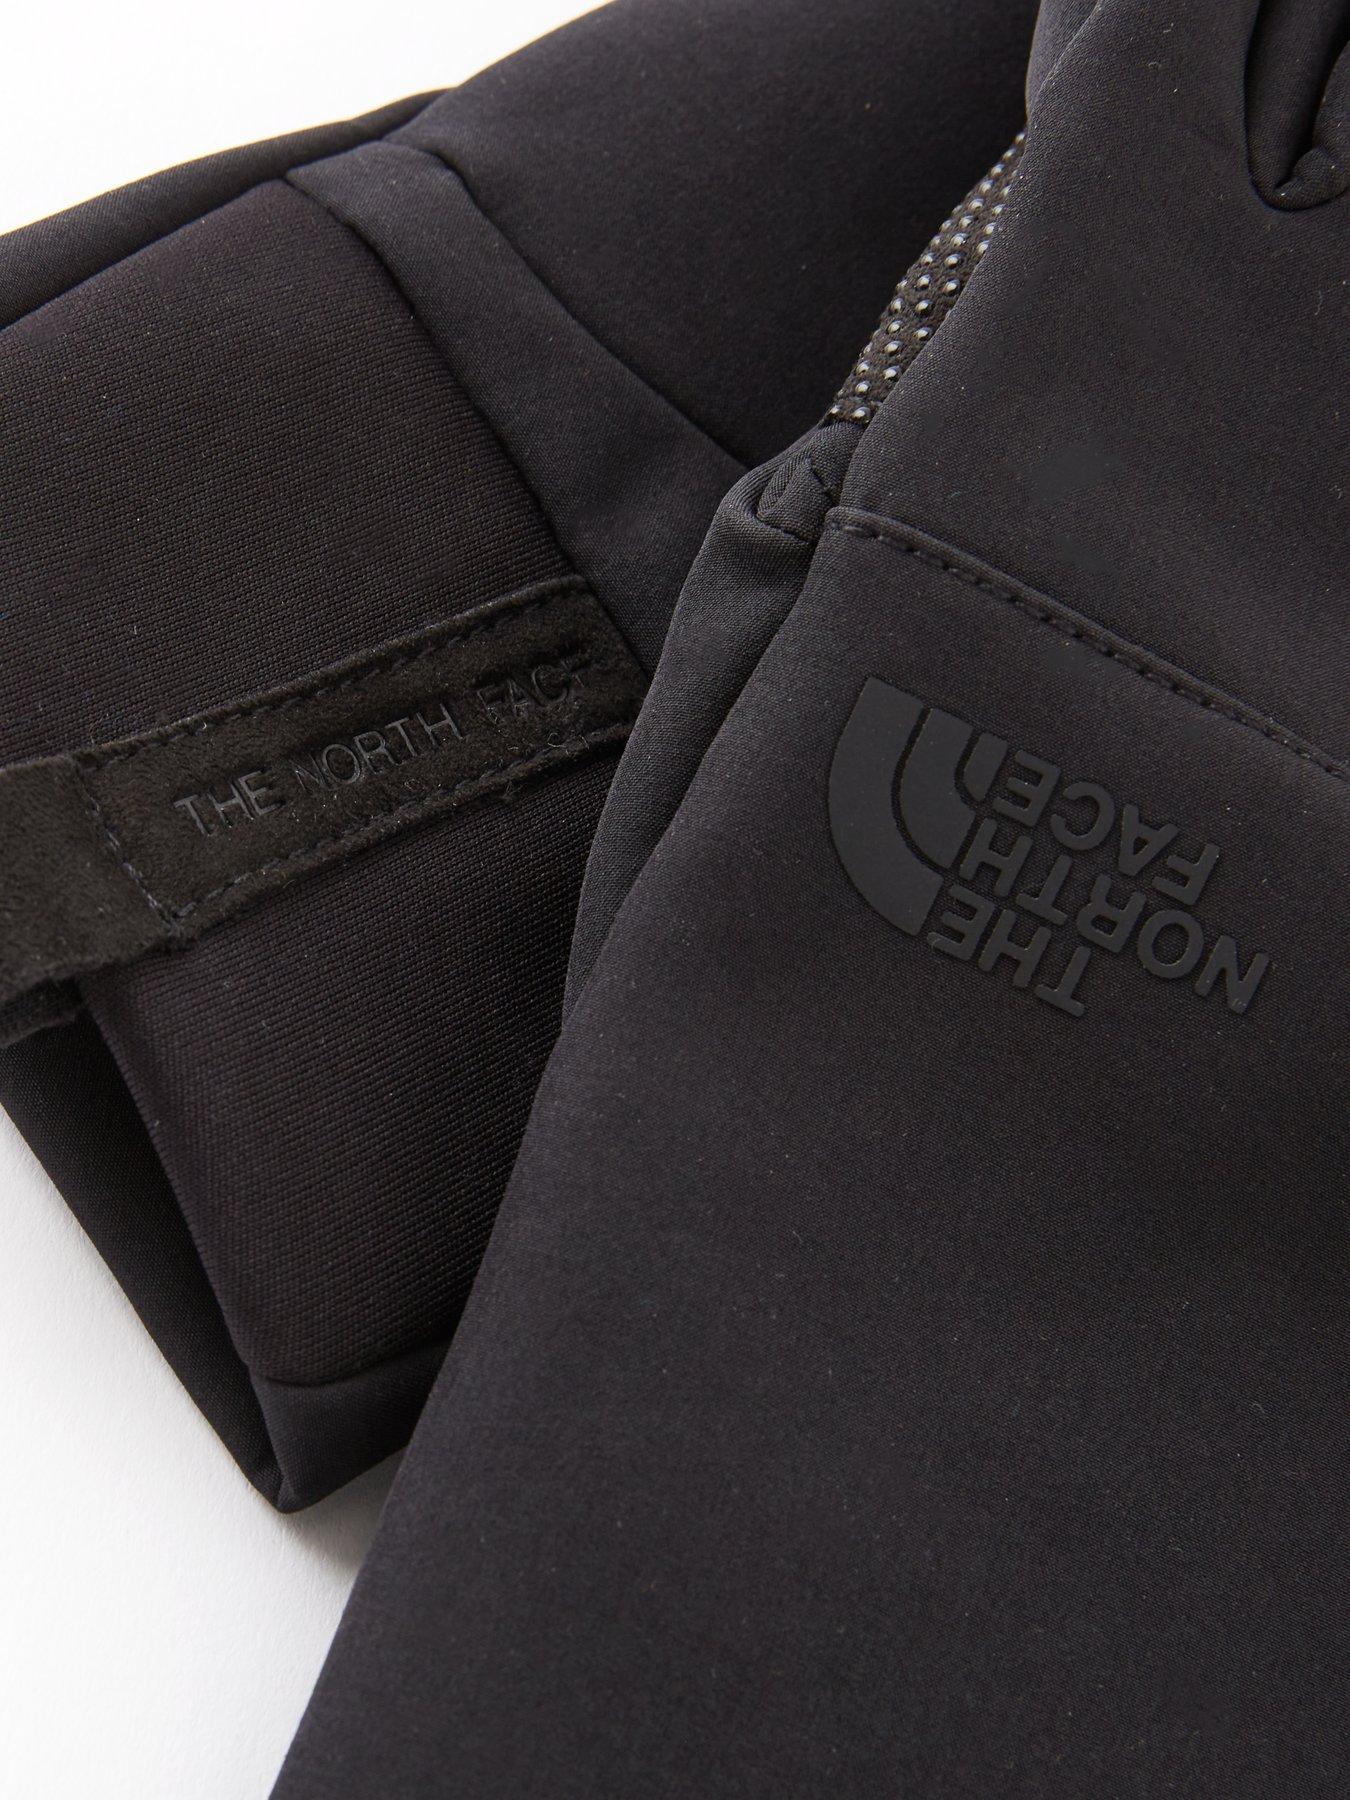 Accessories Apex Softshell Etip™ Gloves - Black